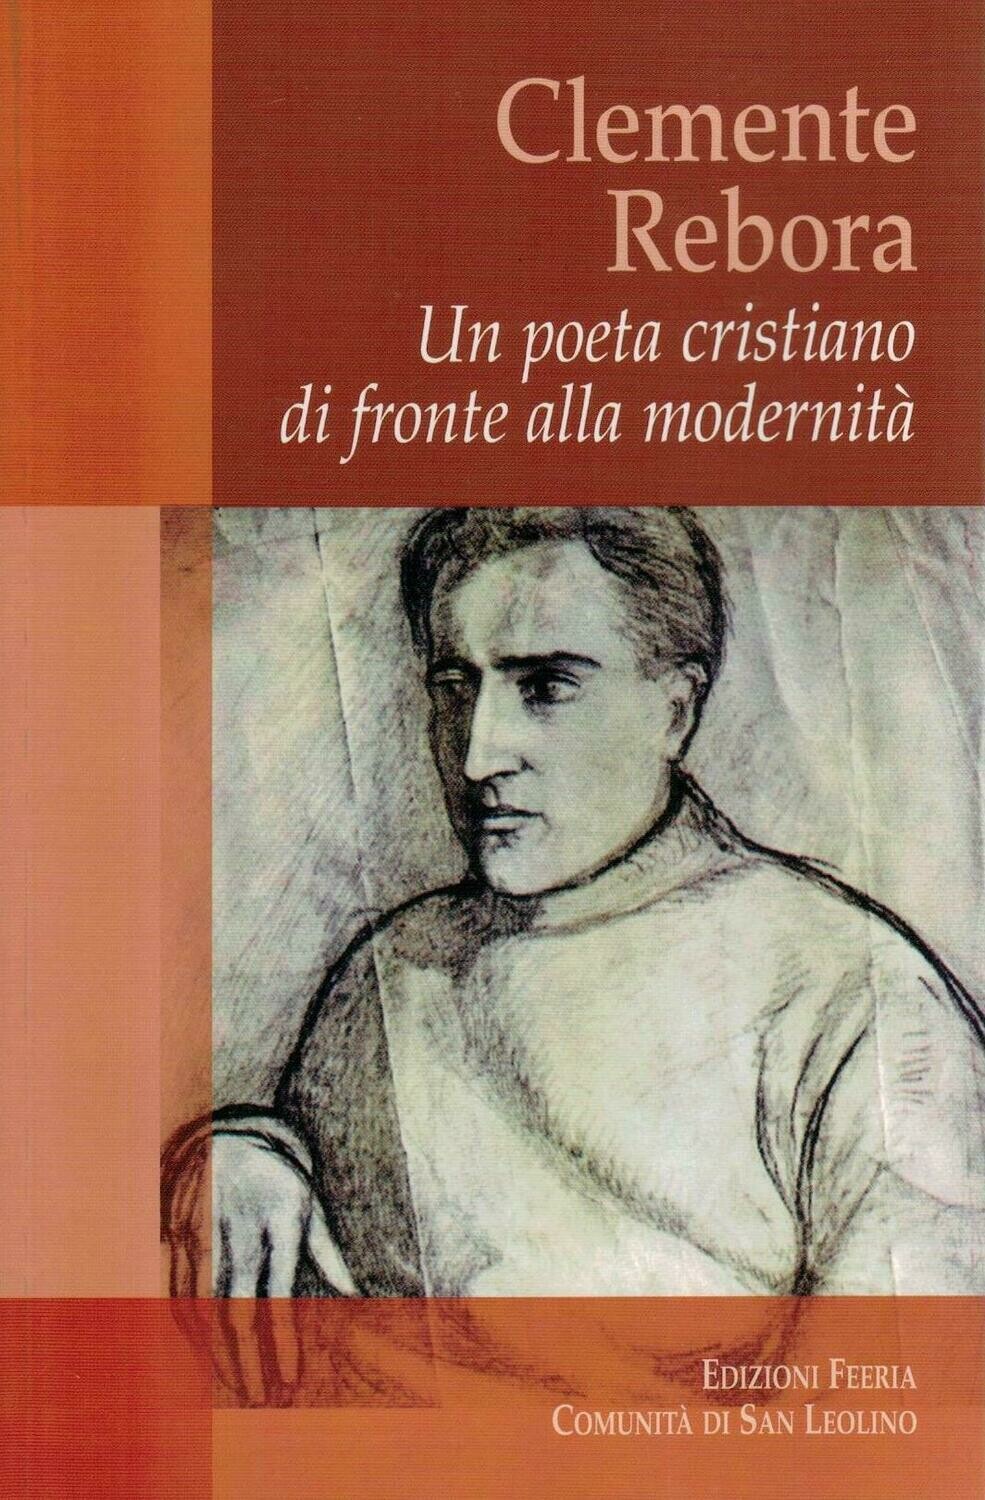 Clemente Rebora - Un poeta cristiano di fronte alla modernità (Autori vari)